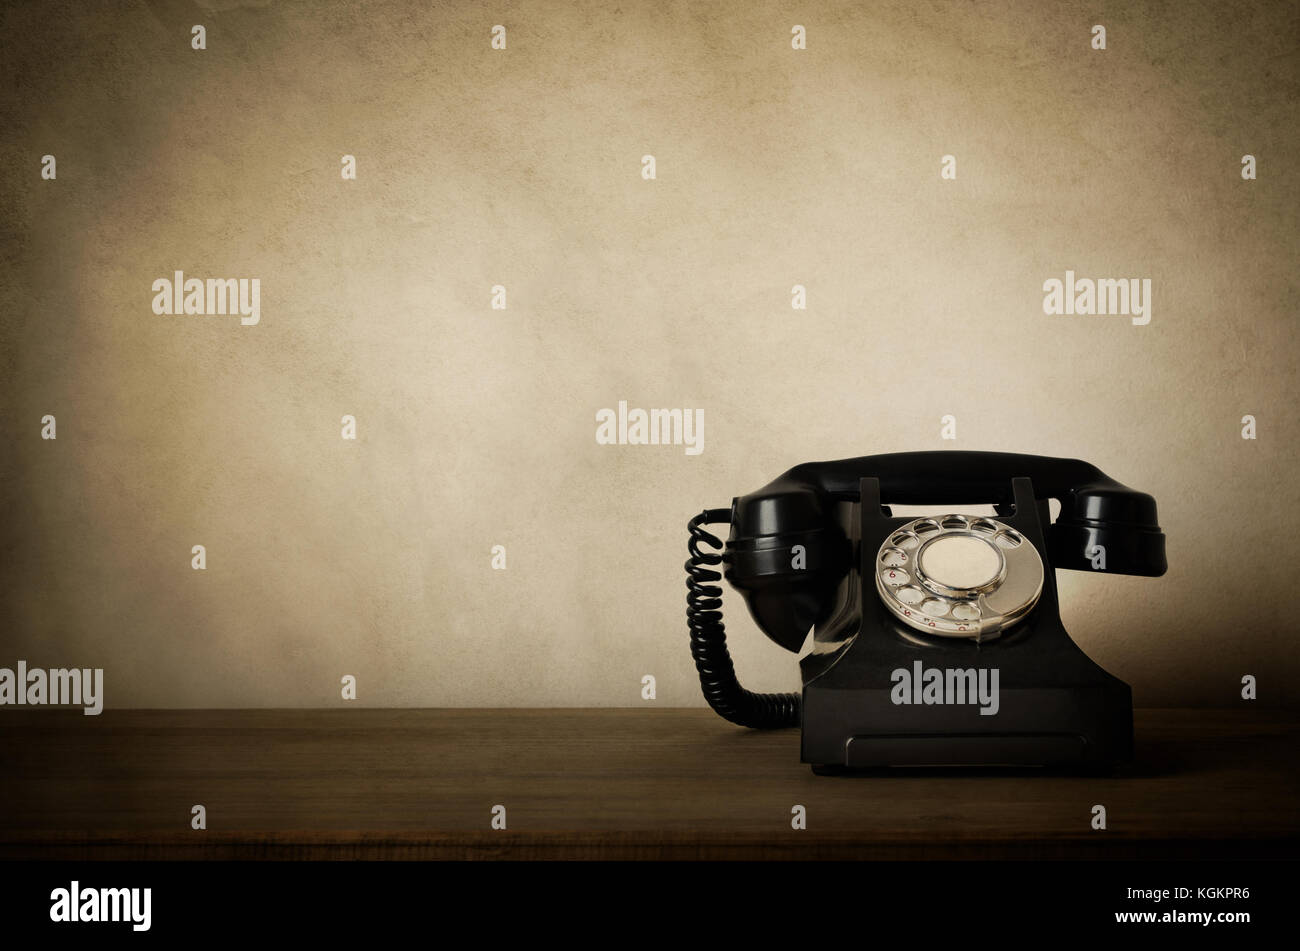 1940 noir téléphone bakélite vintage sur un bureau en bois avec personnes âgées, weathered éfauts et bords vignetted. copie d'espace au-dessus et à gauche. Banque D'Images